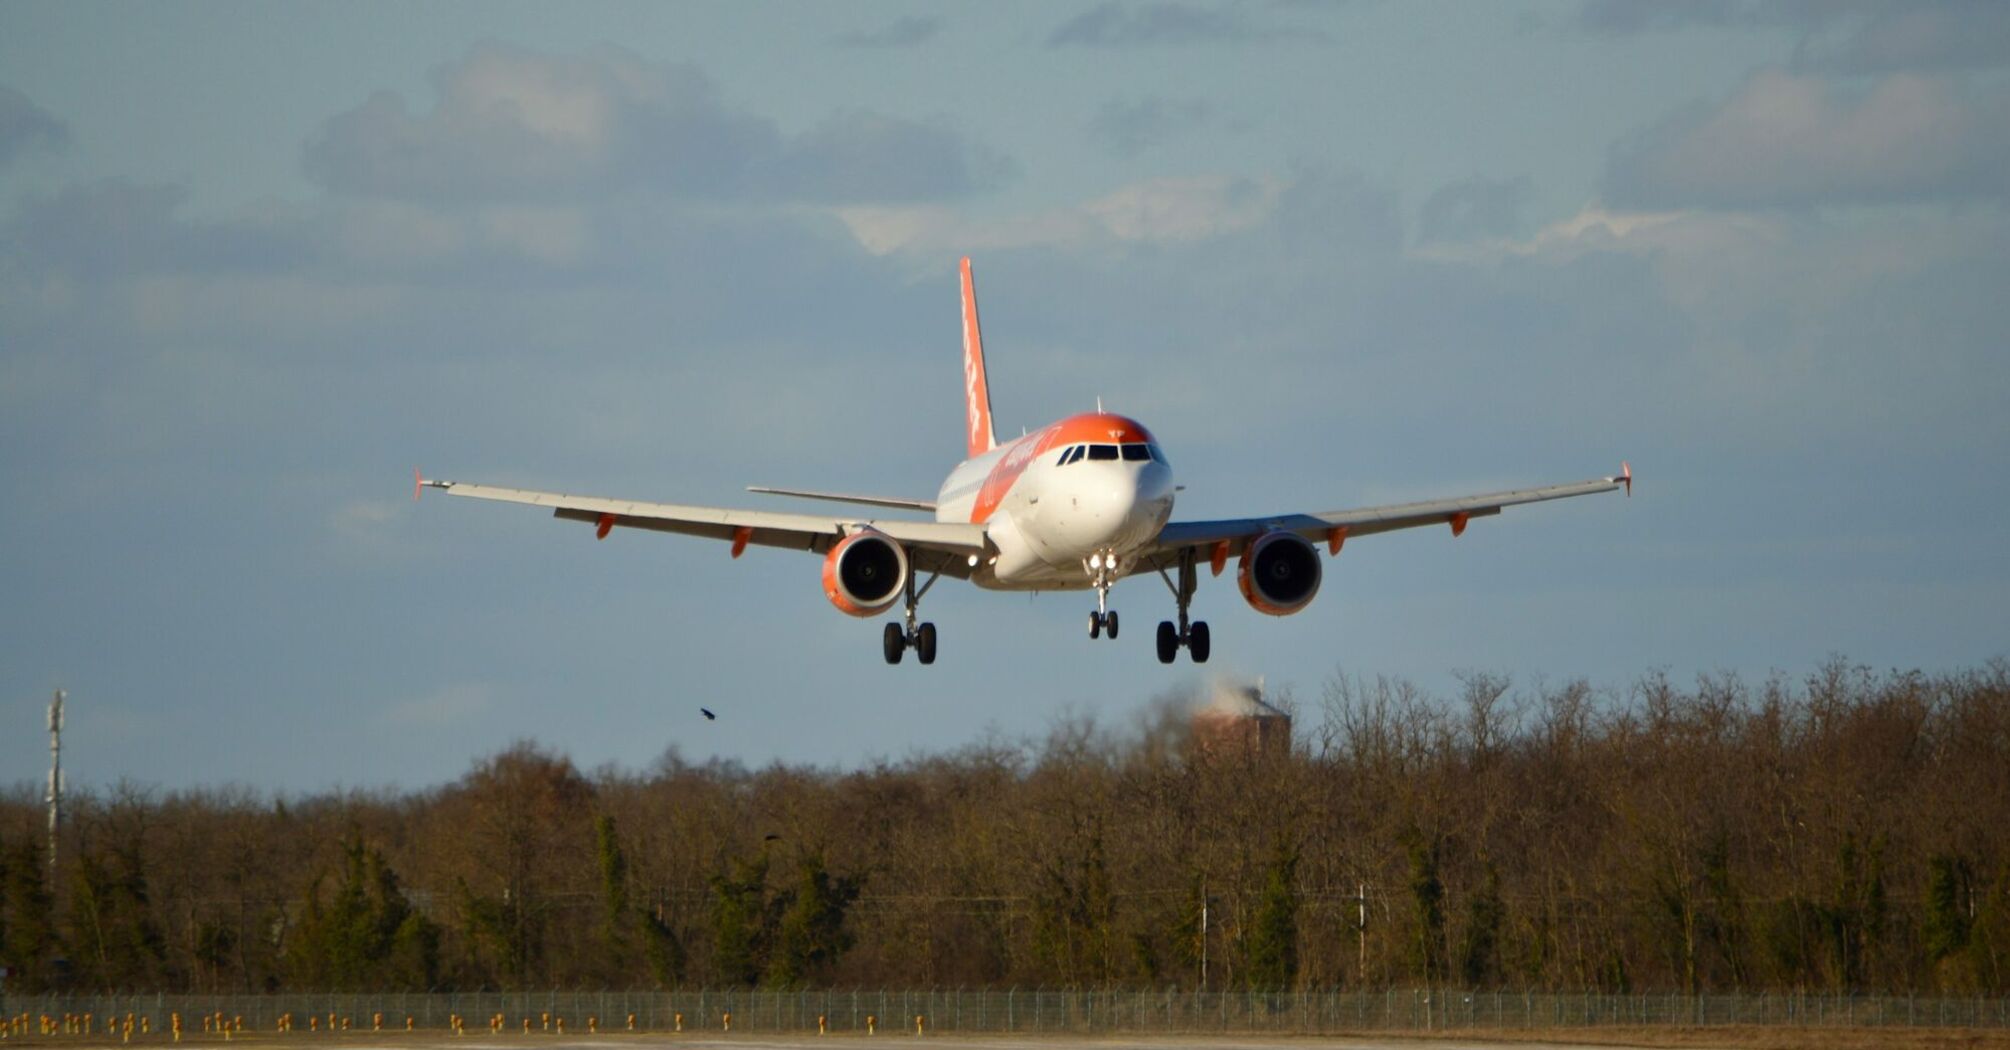 easyJet aircraft landing on a runway